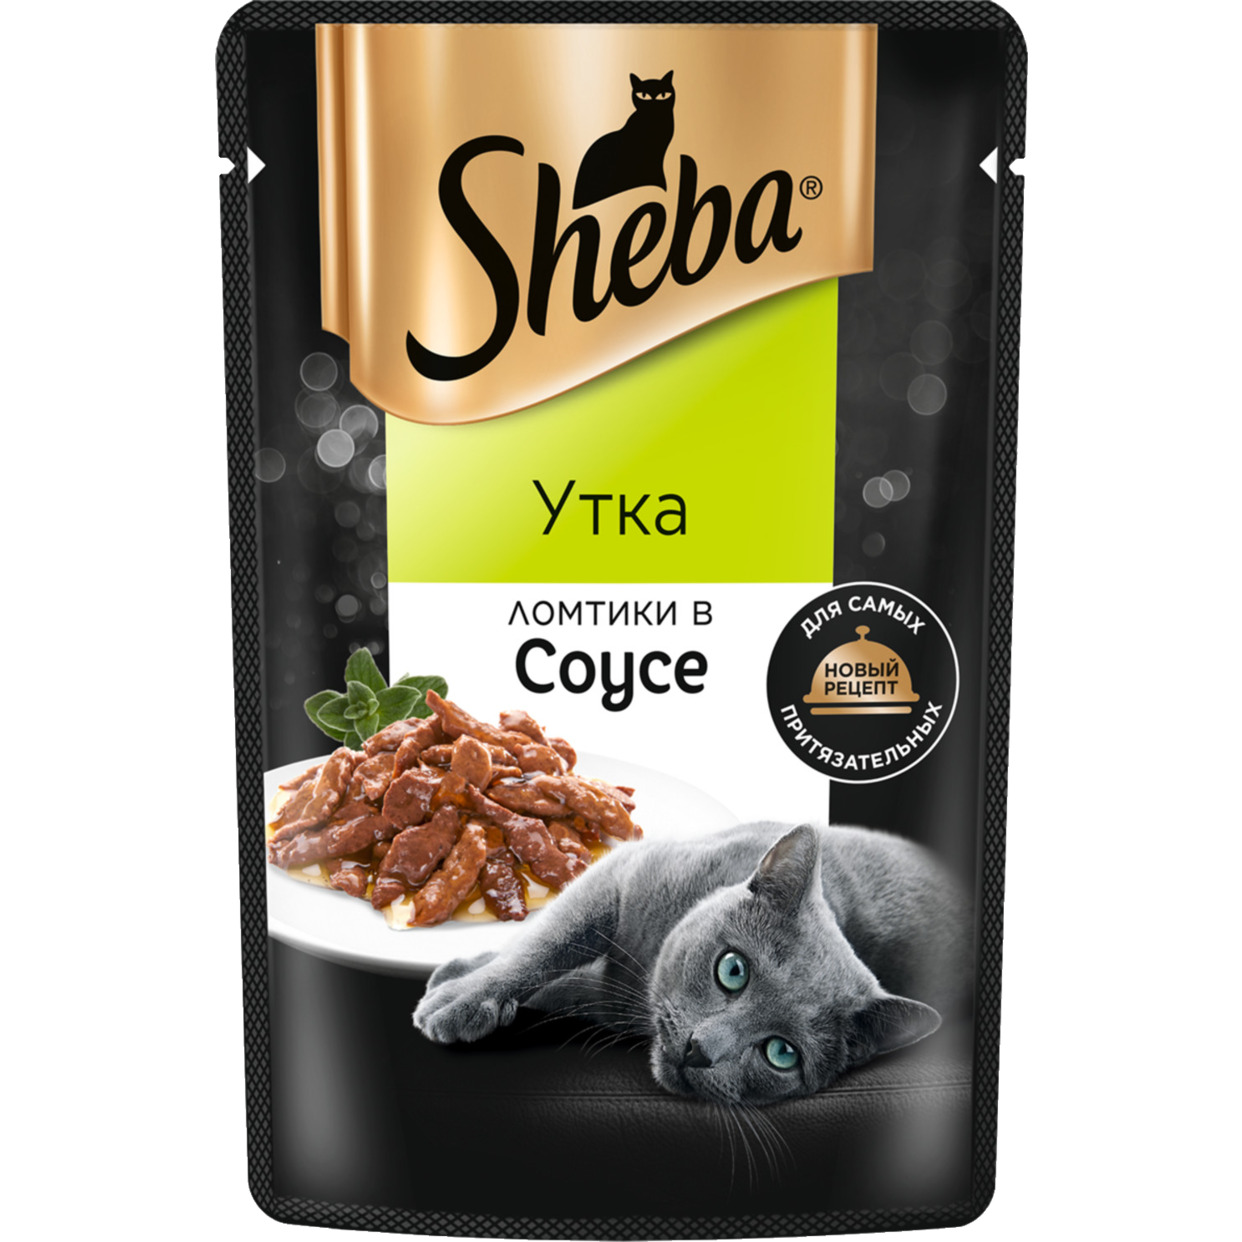 Корм консервированный полнорационный SHEBA для взрослых кошек с уткой "Ломтики в соусе. Утка", 75г по акции в Пятерочке